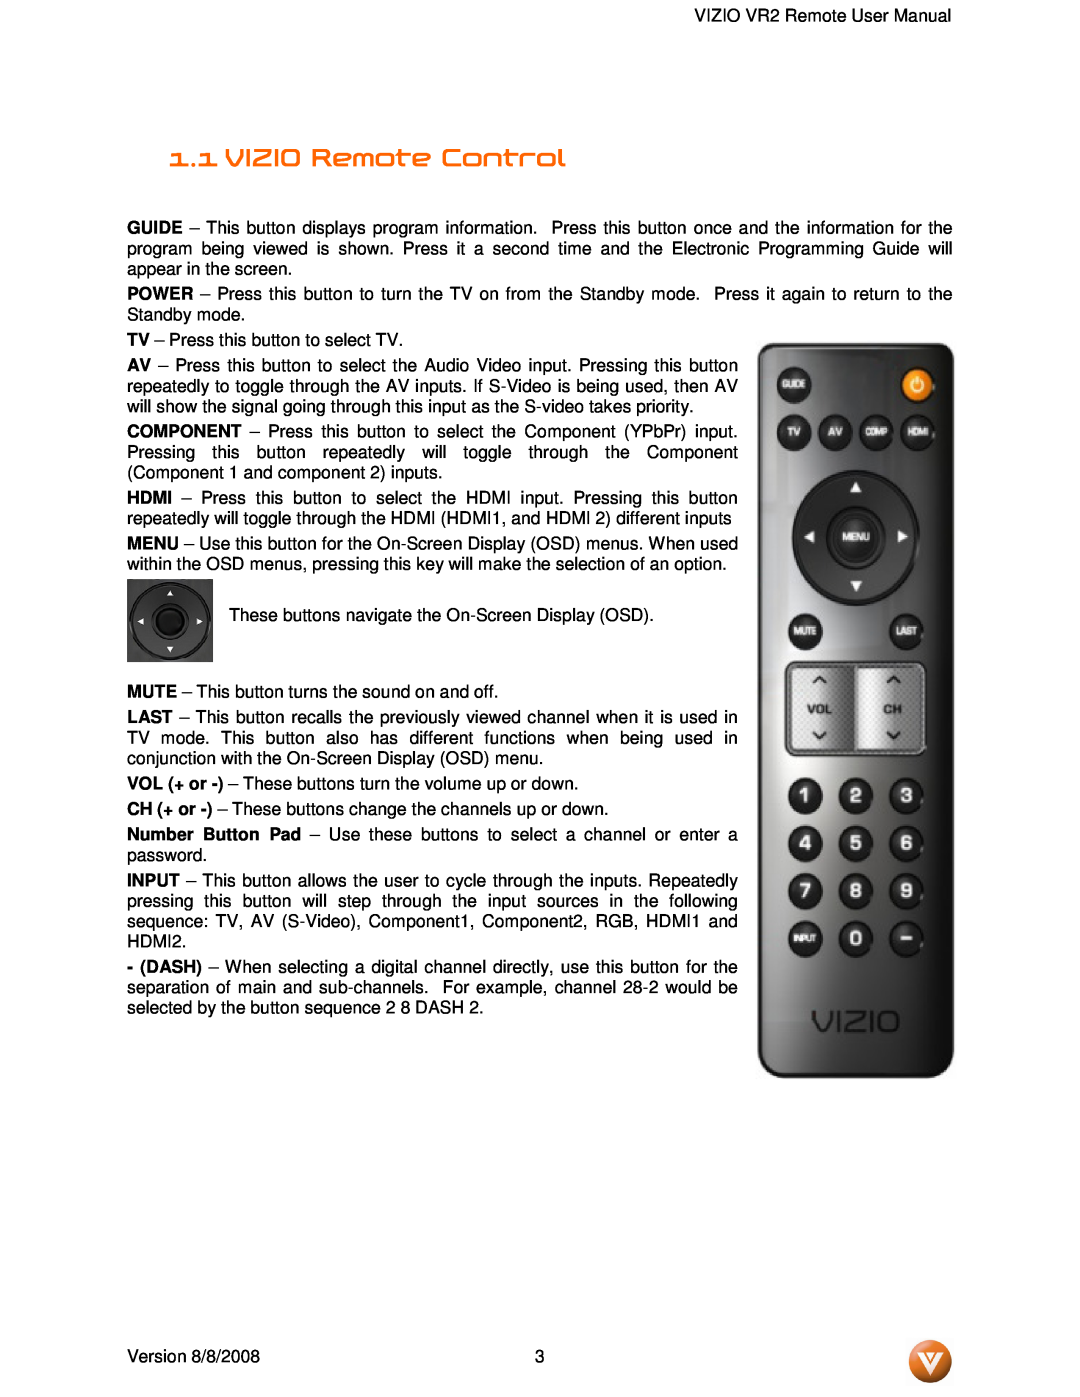 Vizio VR2 manual VIZIO Remote Control 